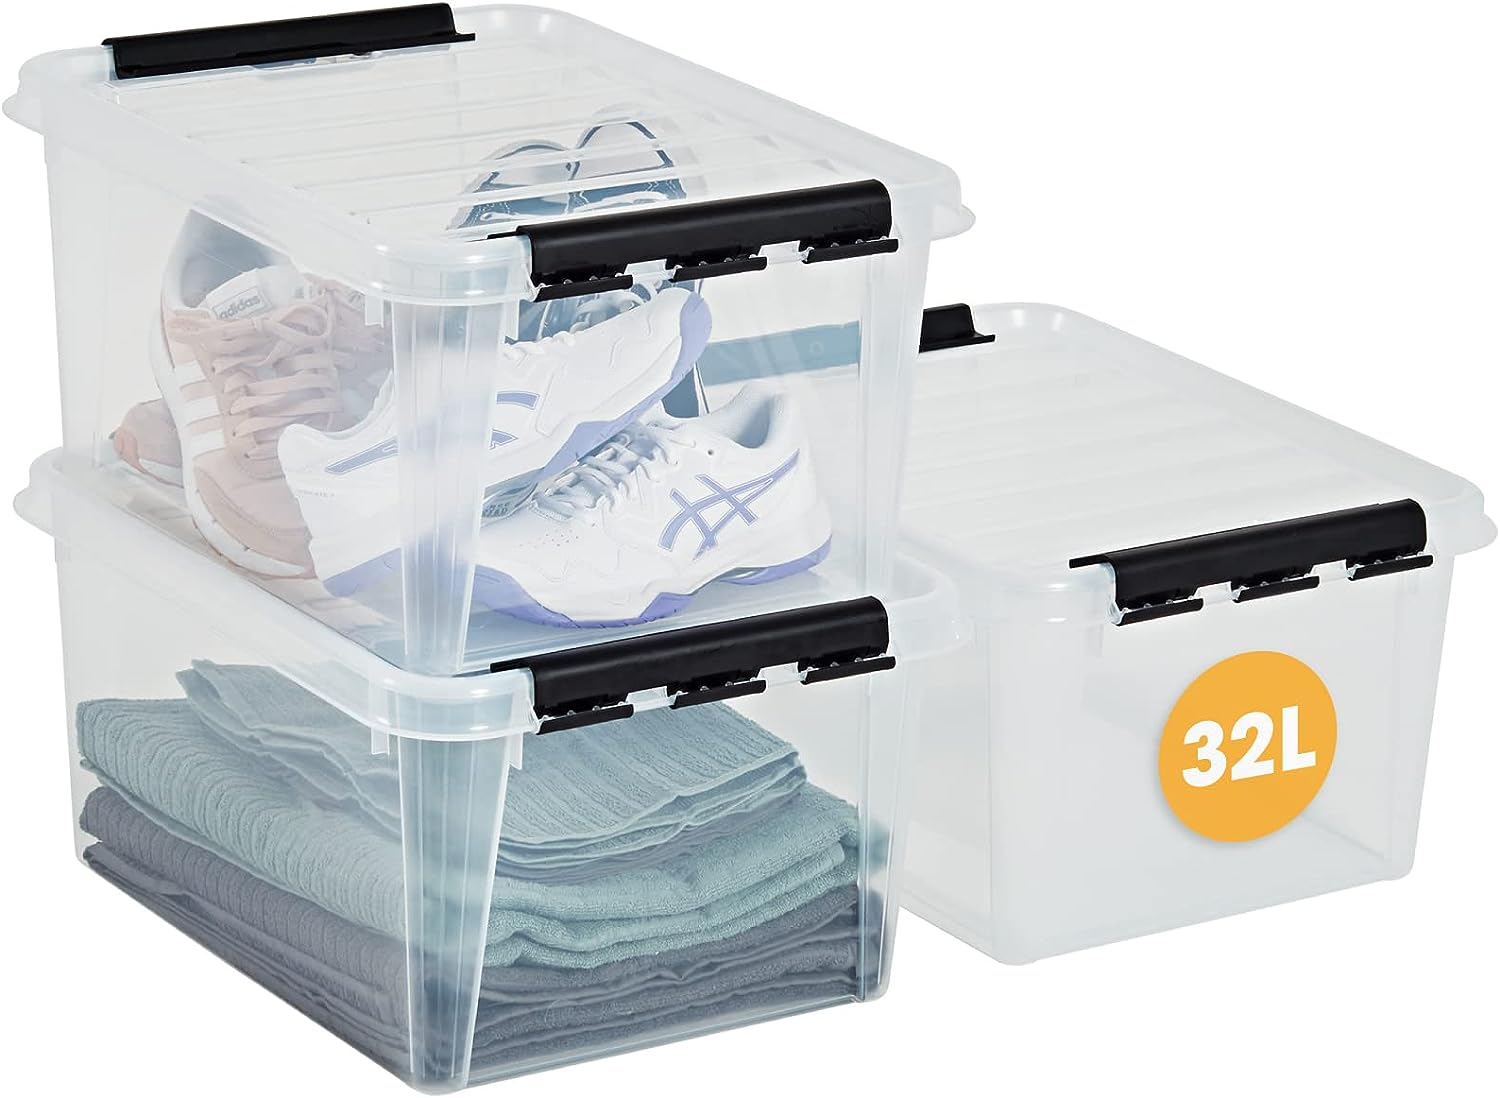 SmartStore ﻿aufbewahrungsbox mit deckel, 32 l, 3er-Pack, verstärkt, groß, transparent, für Lebensmittel geeignet, mit Clipverschluss, stapelbar, BPA-freies Plastik, 50 x 39 x 26 cm (L x B x H)